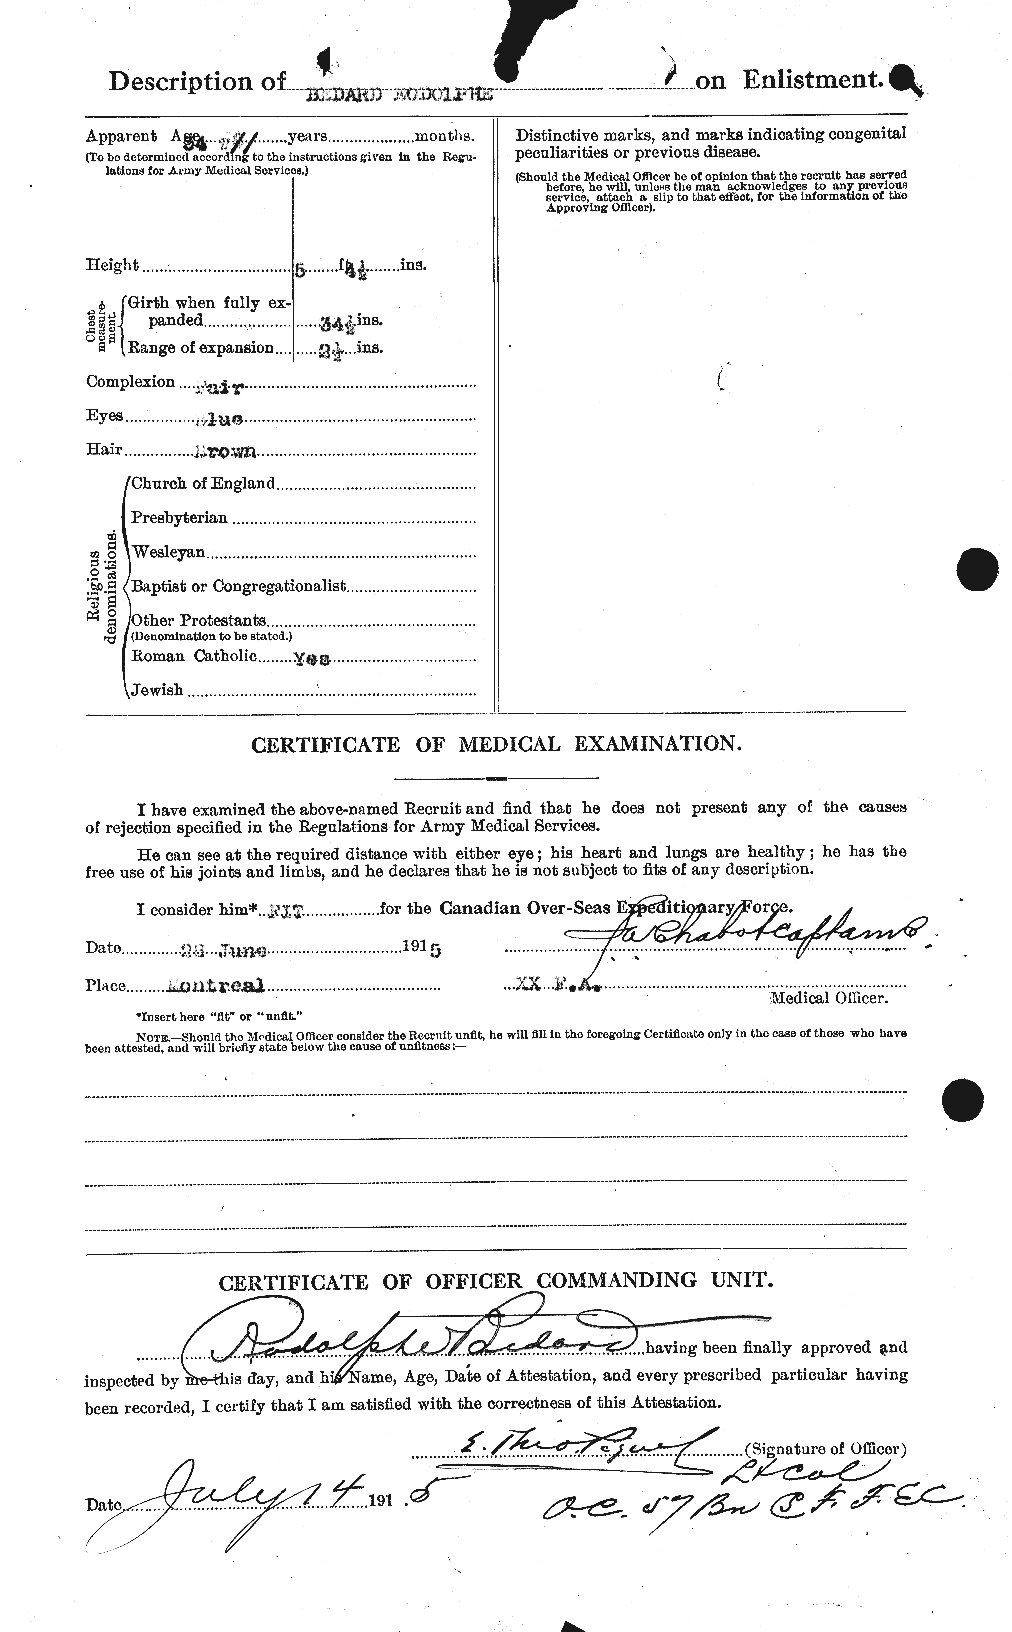 Dossiers du Personnel de la Première Guerre mondiale - CEC 236080b